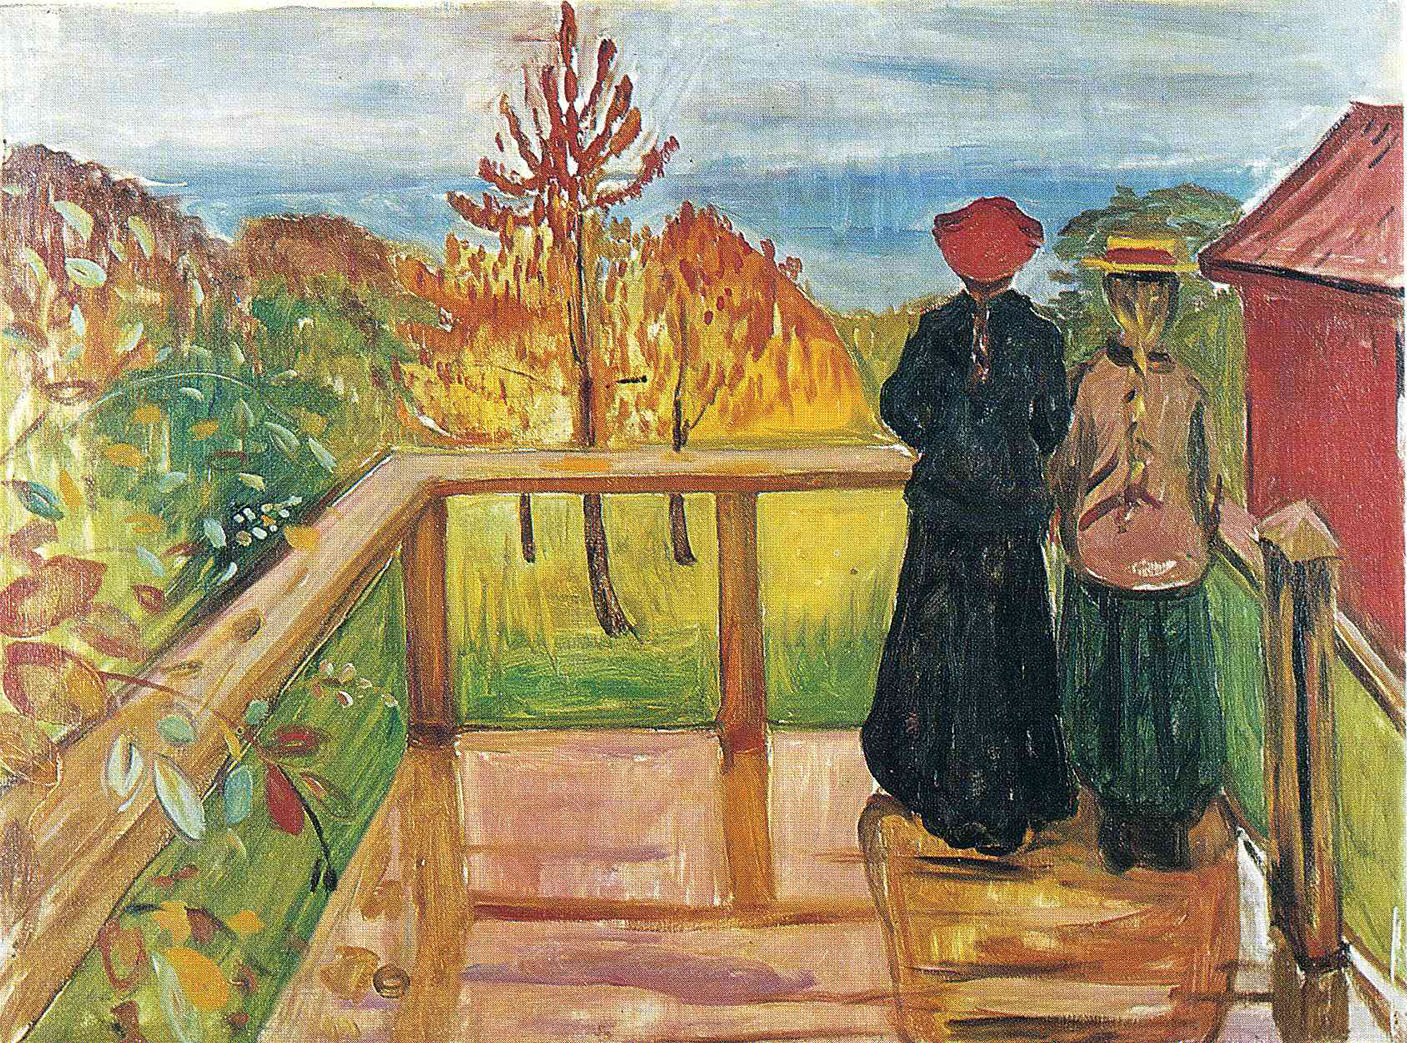 Эдвард Мунк. "Дождь". 1902. Национальная художественная галерея, Осло.